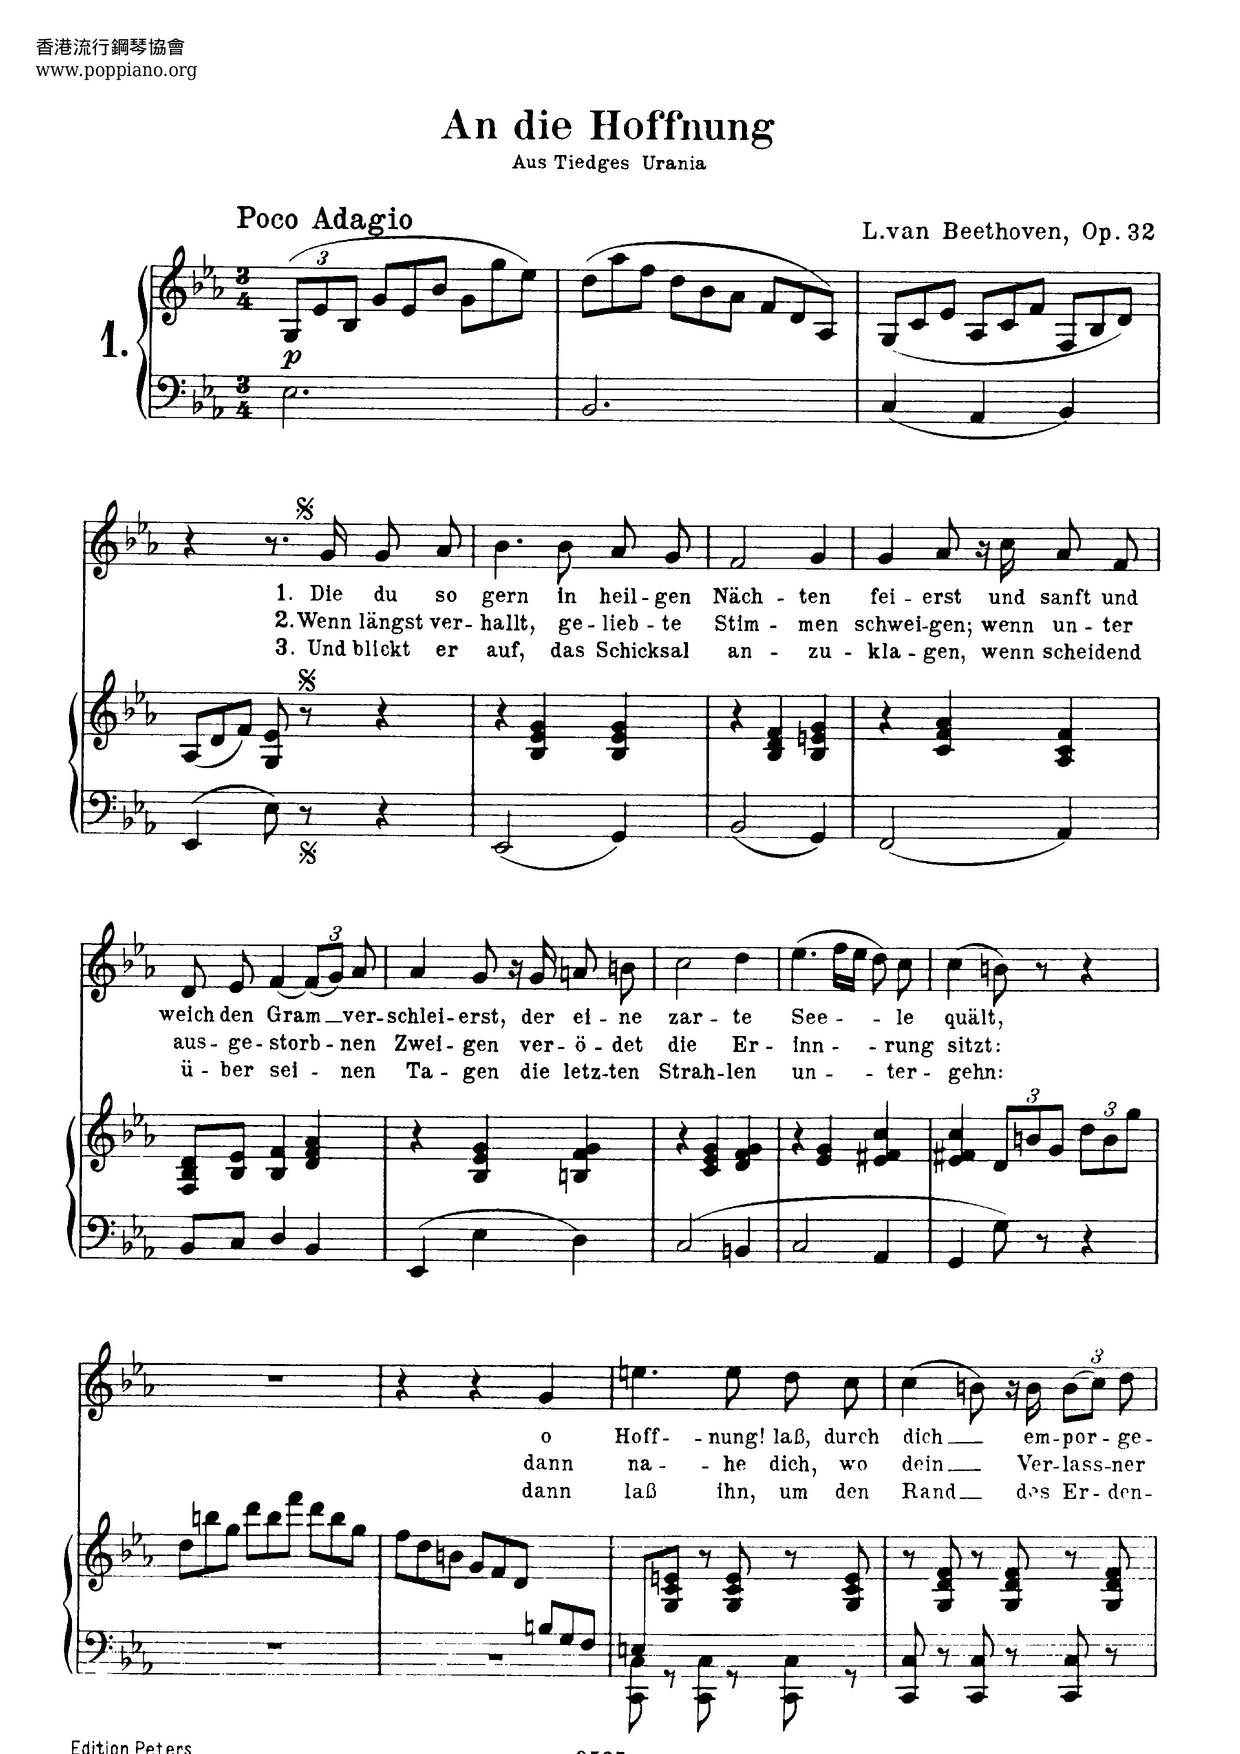 An Die Hoffnung, Op. 32 Score